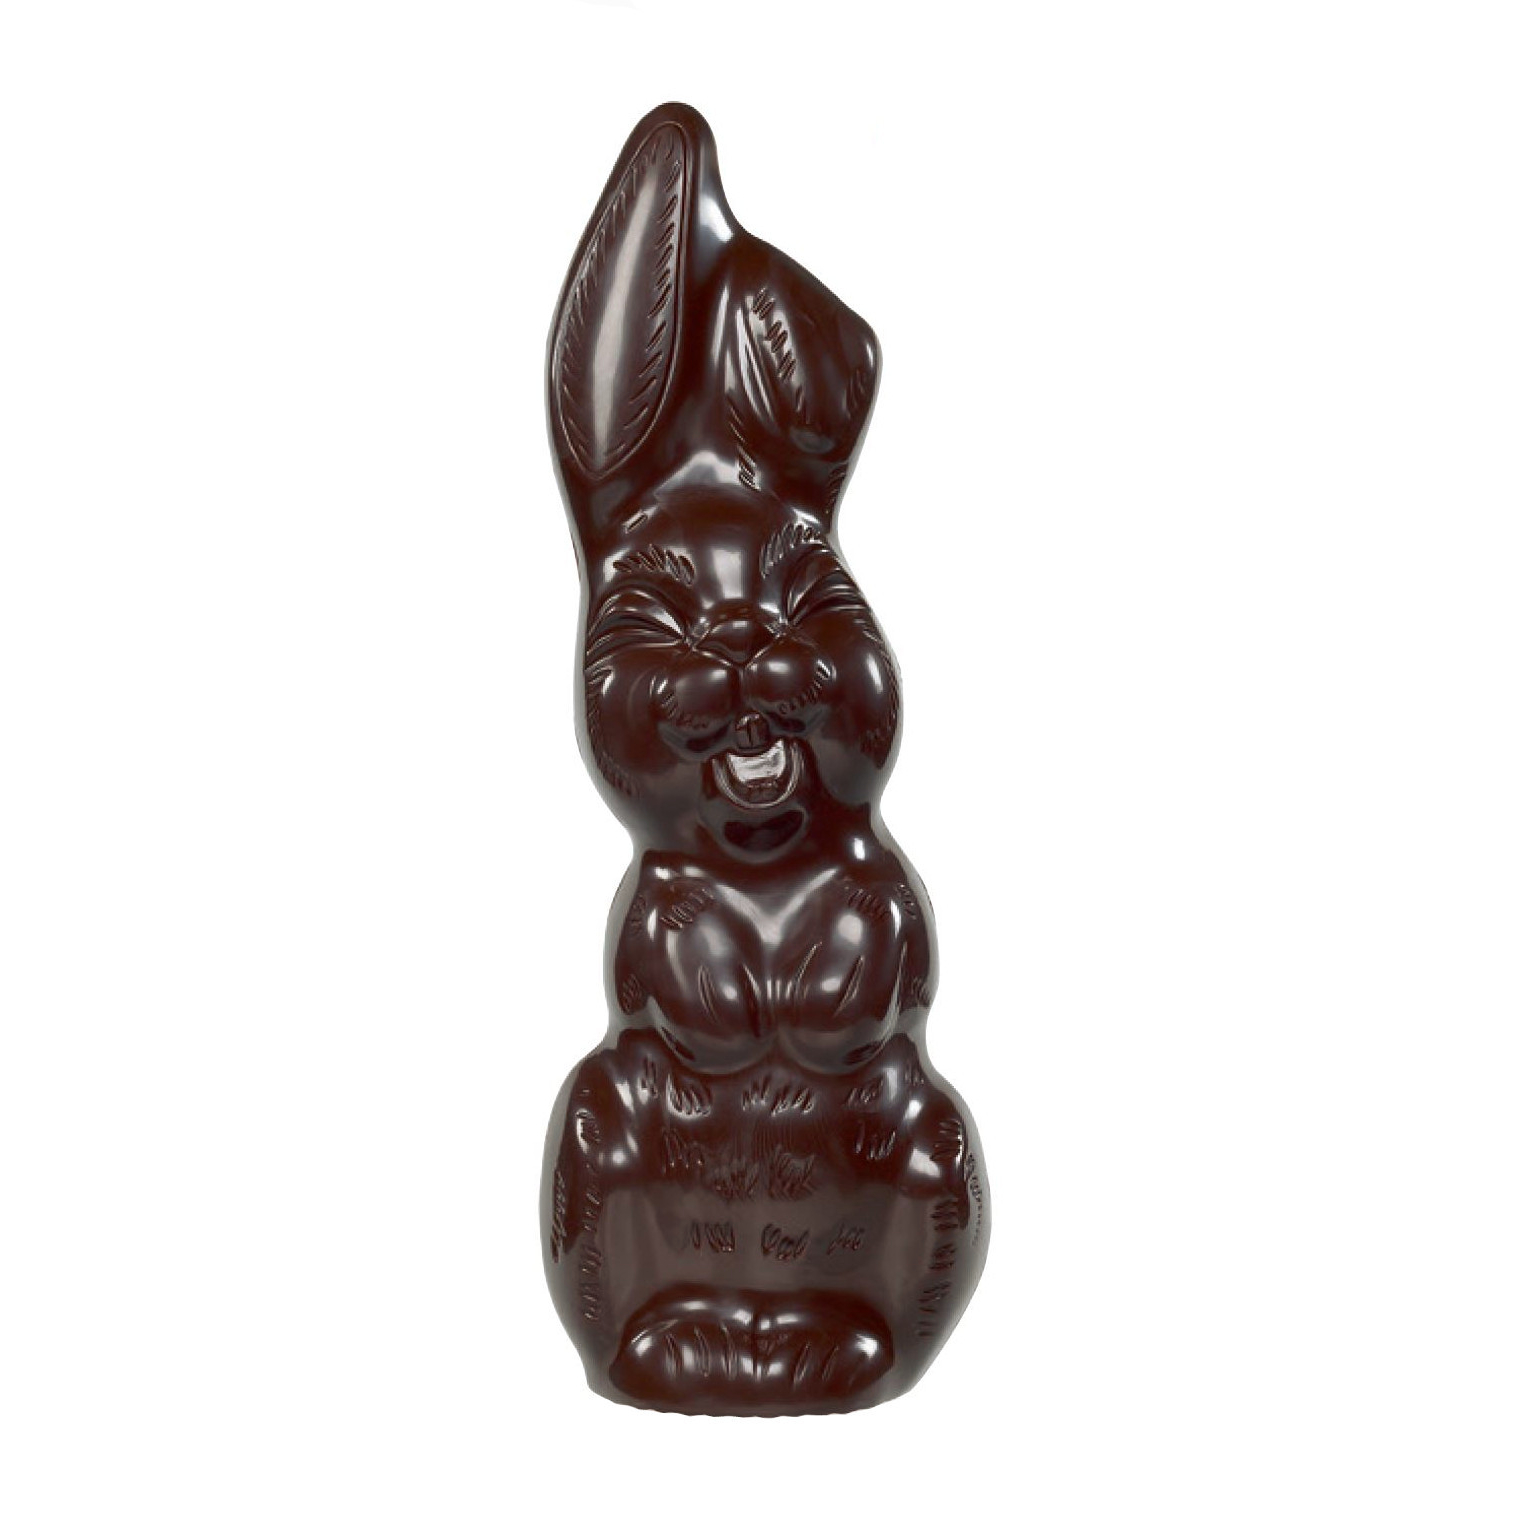 Chokladfigur - Glada Påskharen - Mörk - 100 gram